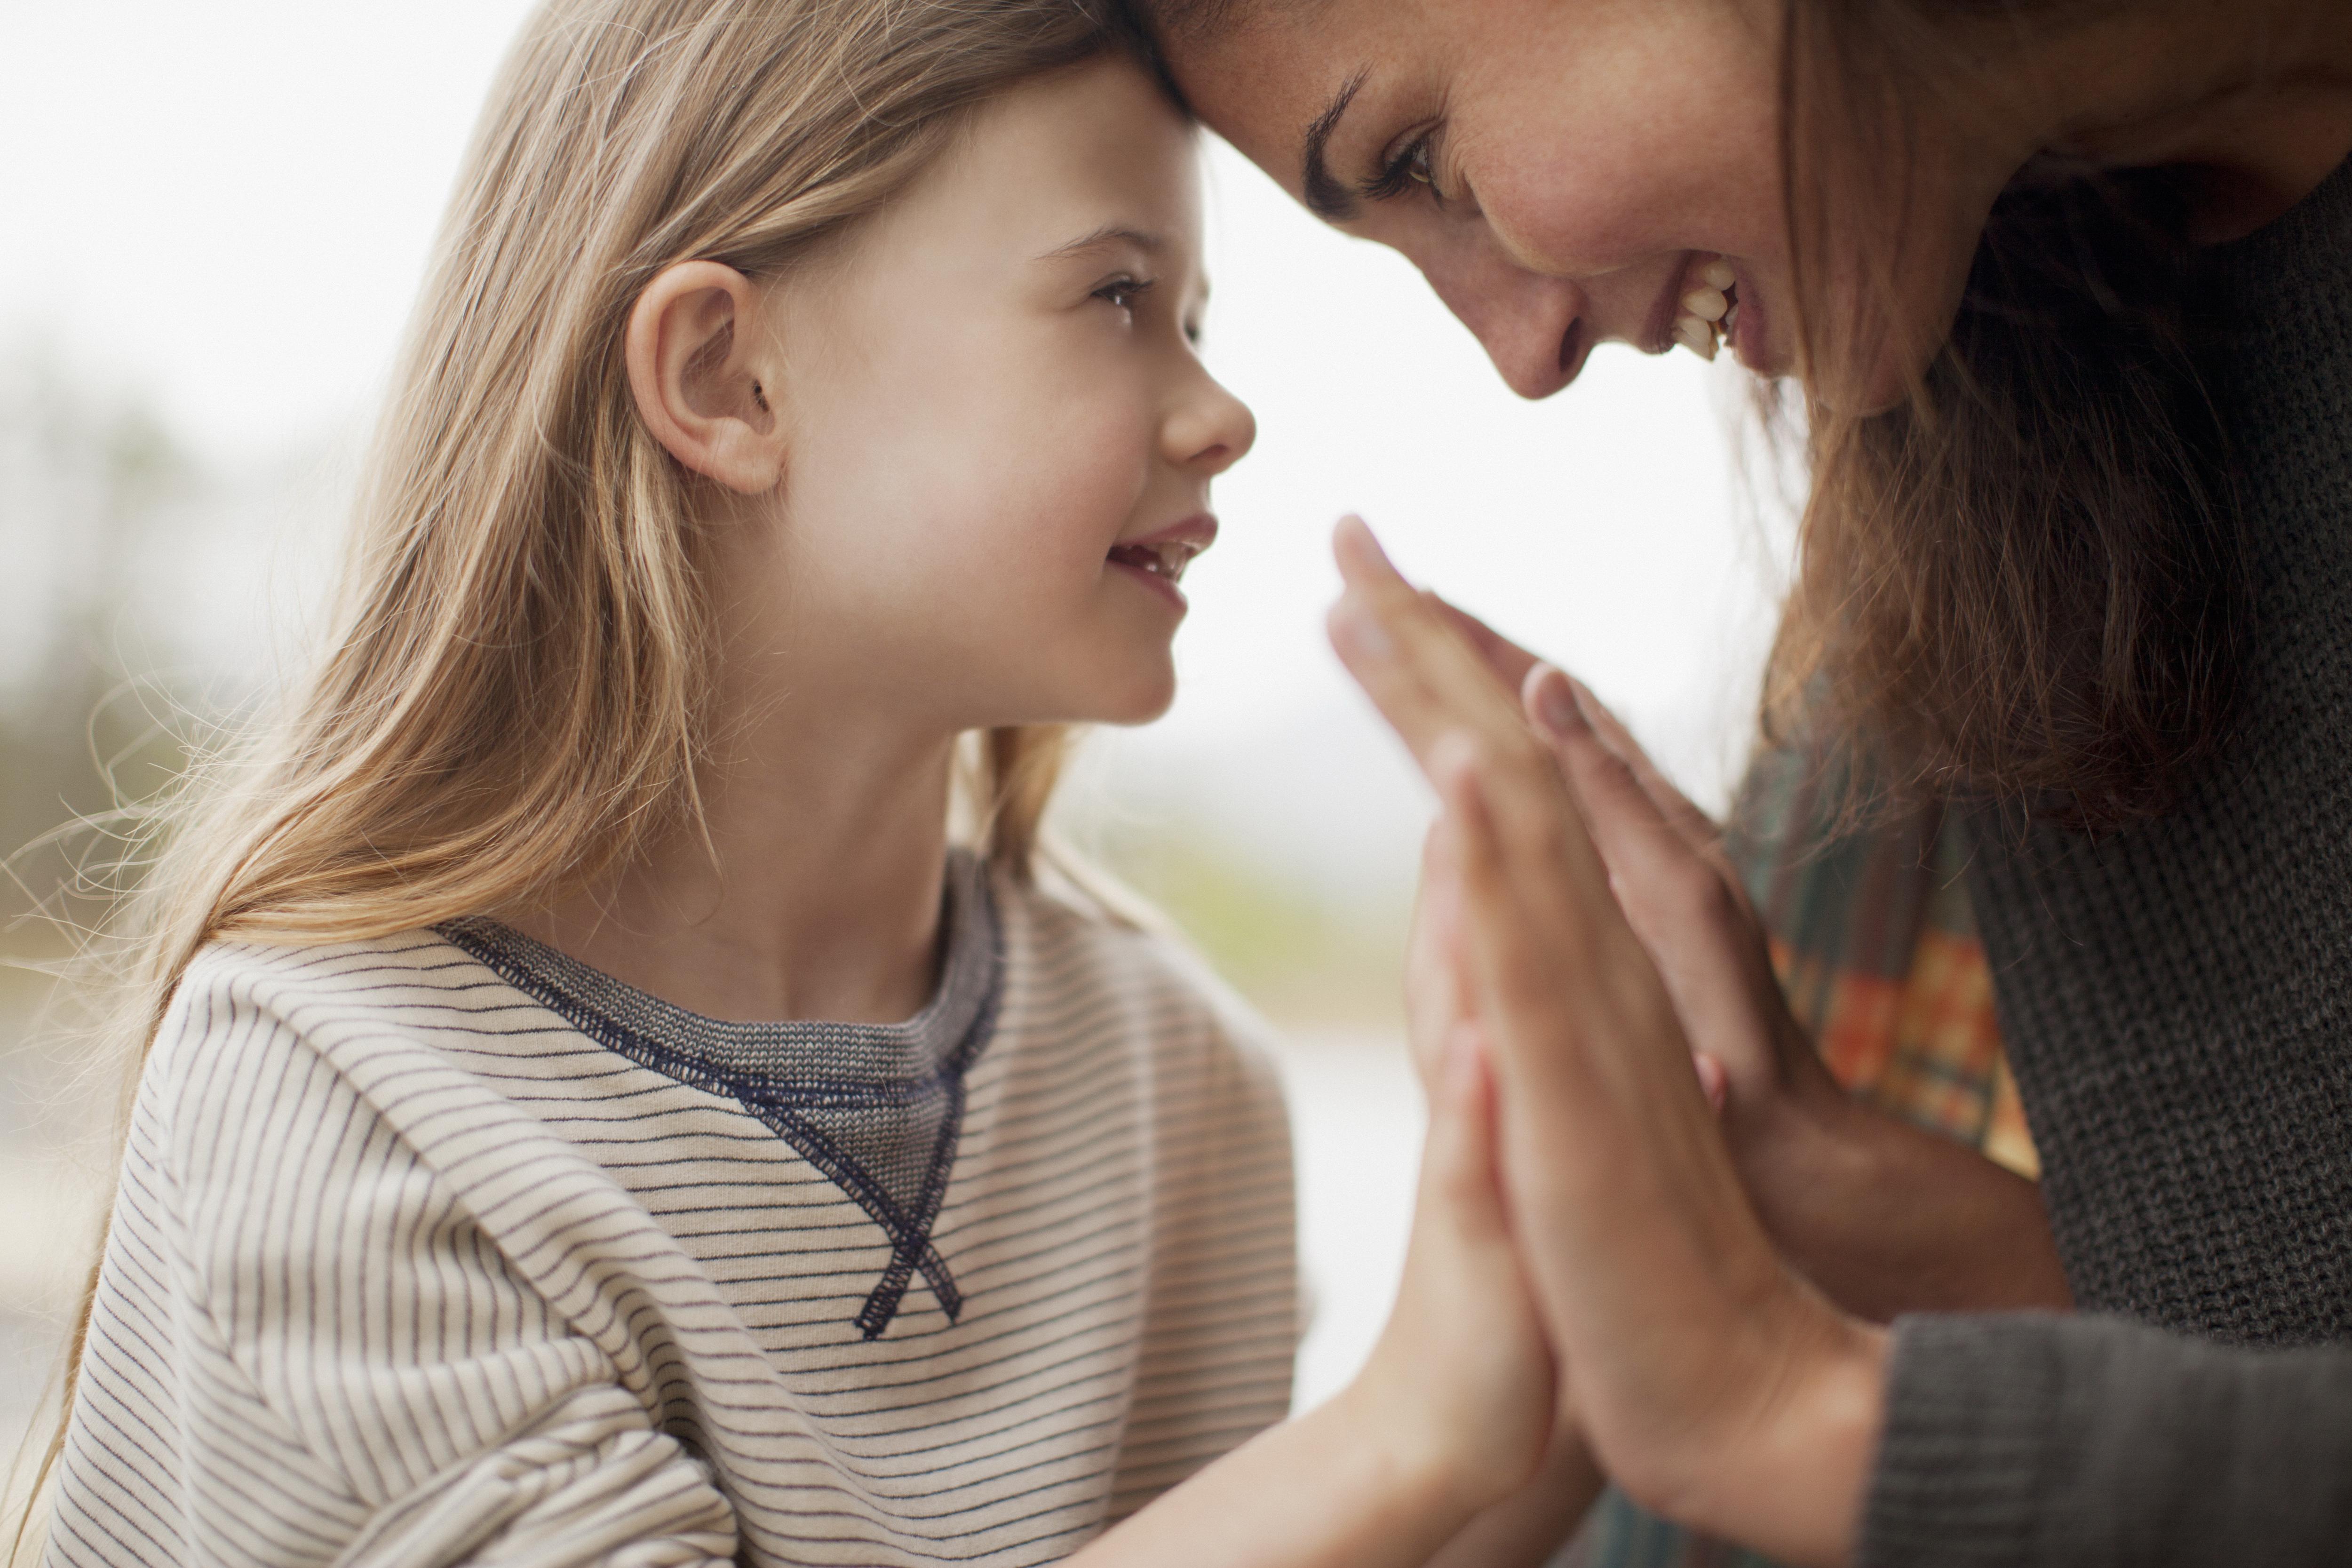 10 жизненных уроков, которым нужно научить свою дочь, воспитание дочери, как воспитывать дочь, советы мамам, личный опыт